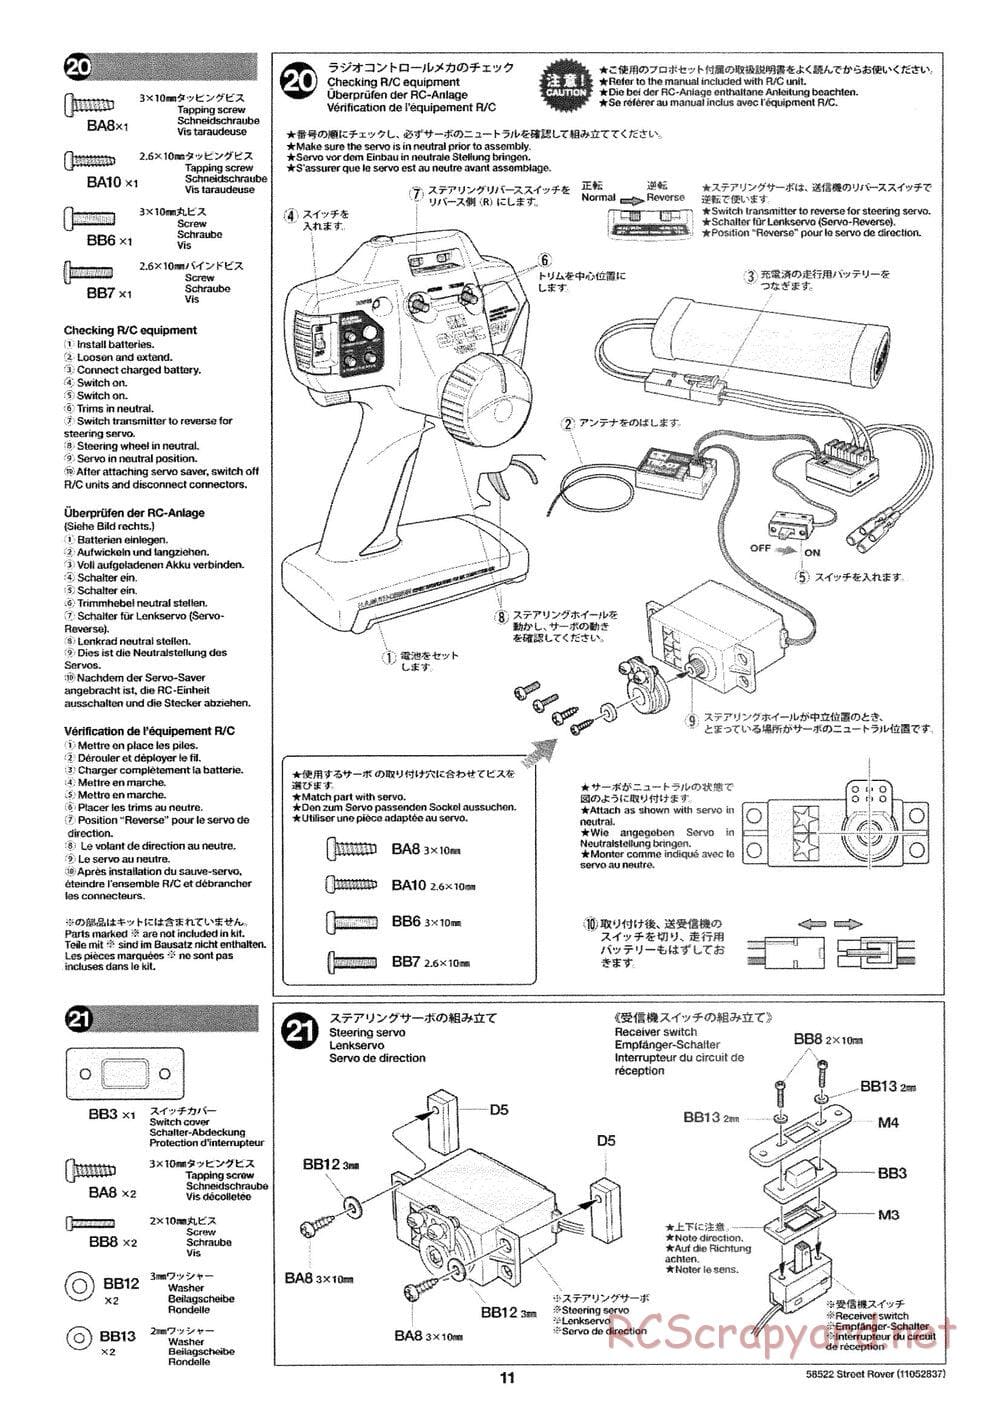 Tamiya - Street Rover Chassis - Manual - Page 12